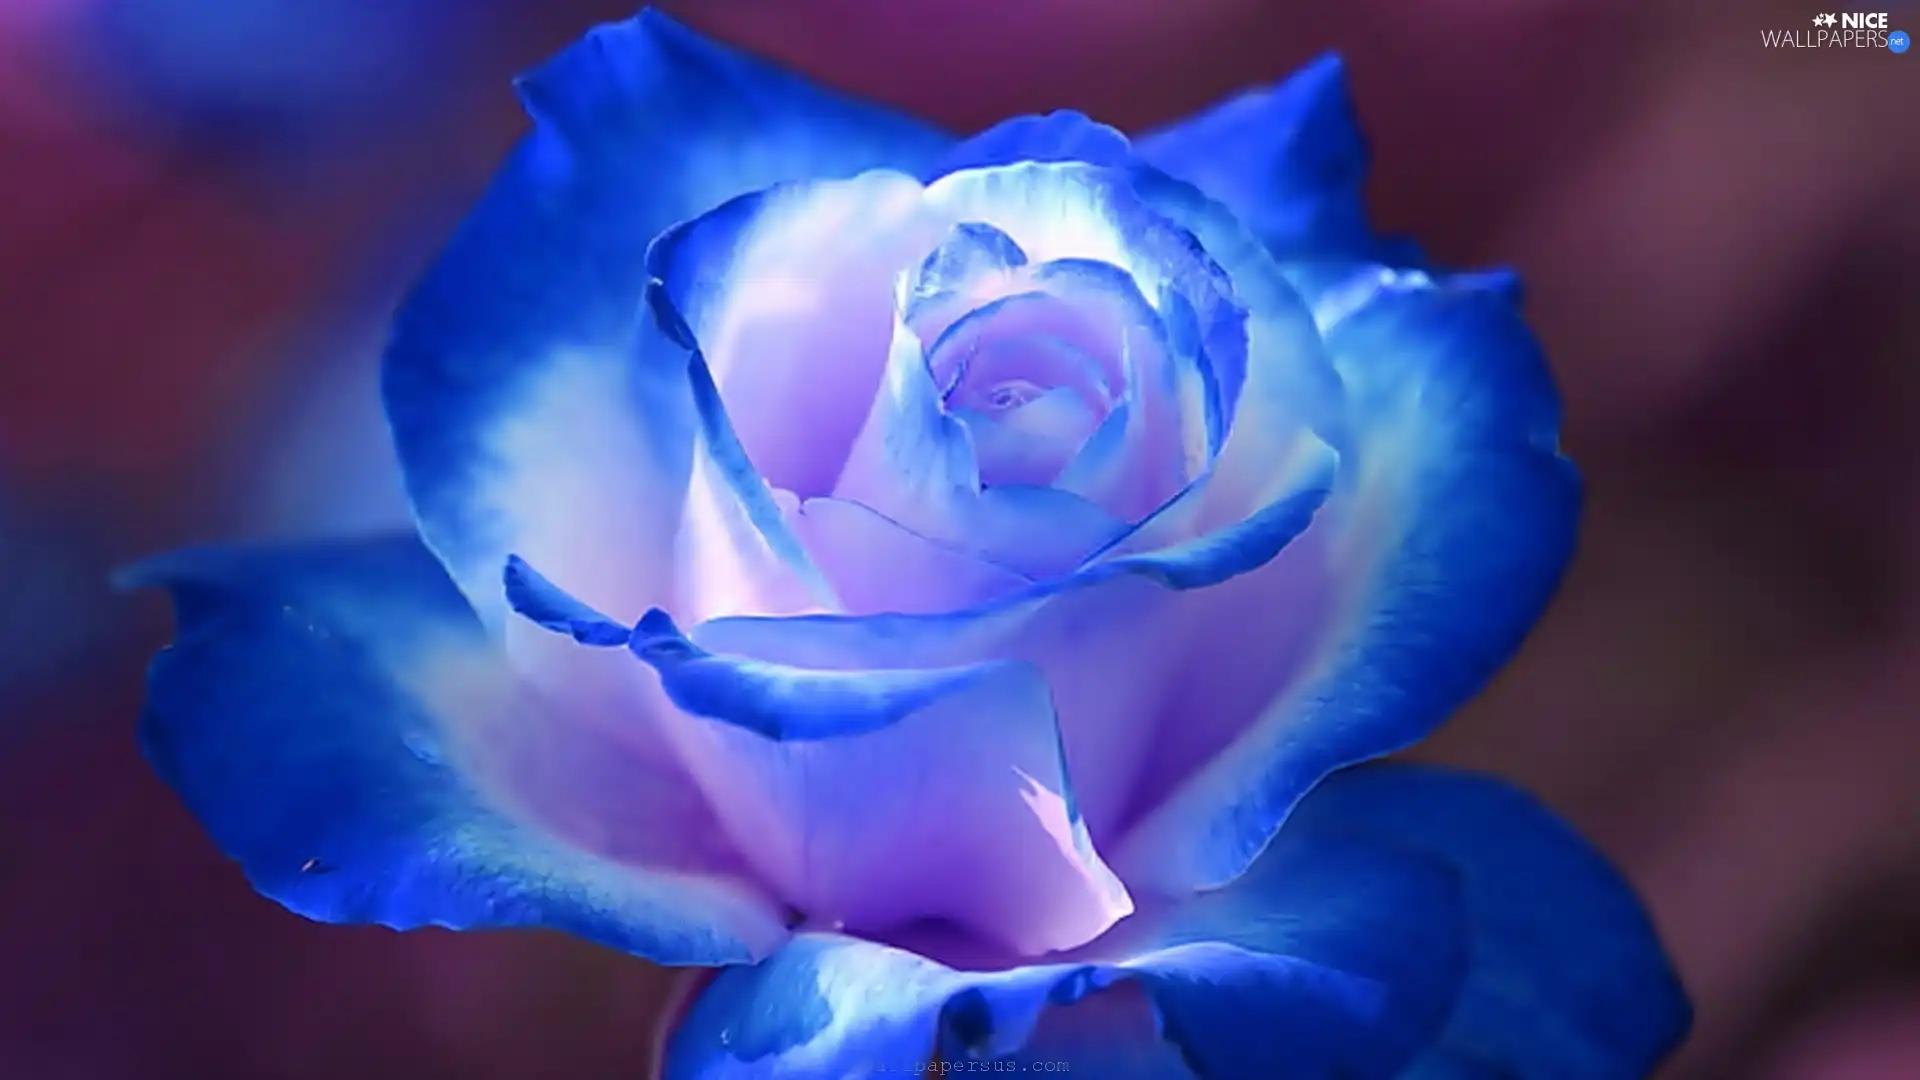 Blue, rose